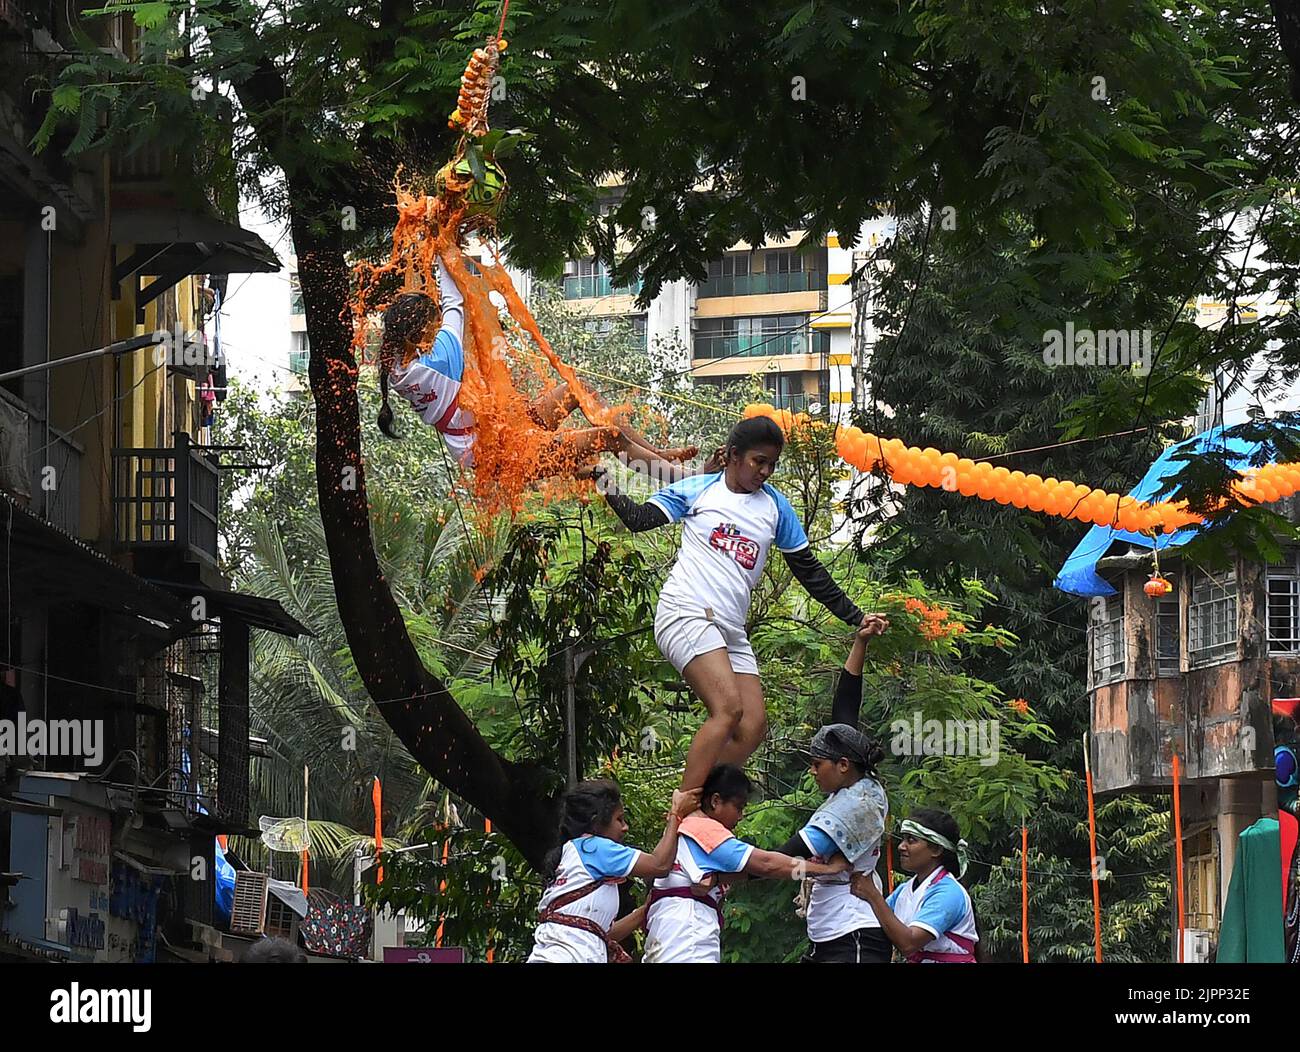 Mumbai, Indien. 19. August 2022. Hindu-Anhänger (Frauen) bilden während des Janmashtami-Festivals in Mumbai einen Pyramidenbruch dahi handi (irdischer Topf mit Quark gefüllt). Janmashtami wird gefeiert, um die Geburt von Lord Krishna zu markieren. Hinduistische Anhänger versammeln sich auf den Straßen und bilden akrobatische Pyramiden, um Dahi handi (irdischer Topf mit Quark gefüllt) zu brechen, um den Anlass zu feiern. Kredit: SOPA Images Limited/Alamy Live Nachrichten Stockfoto